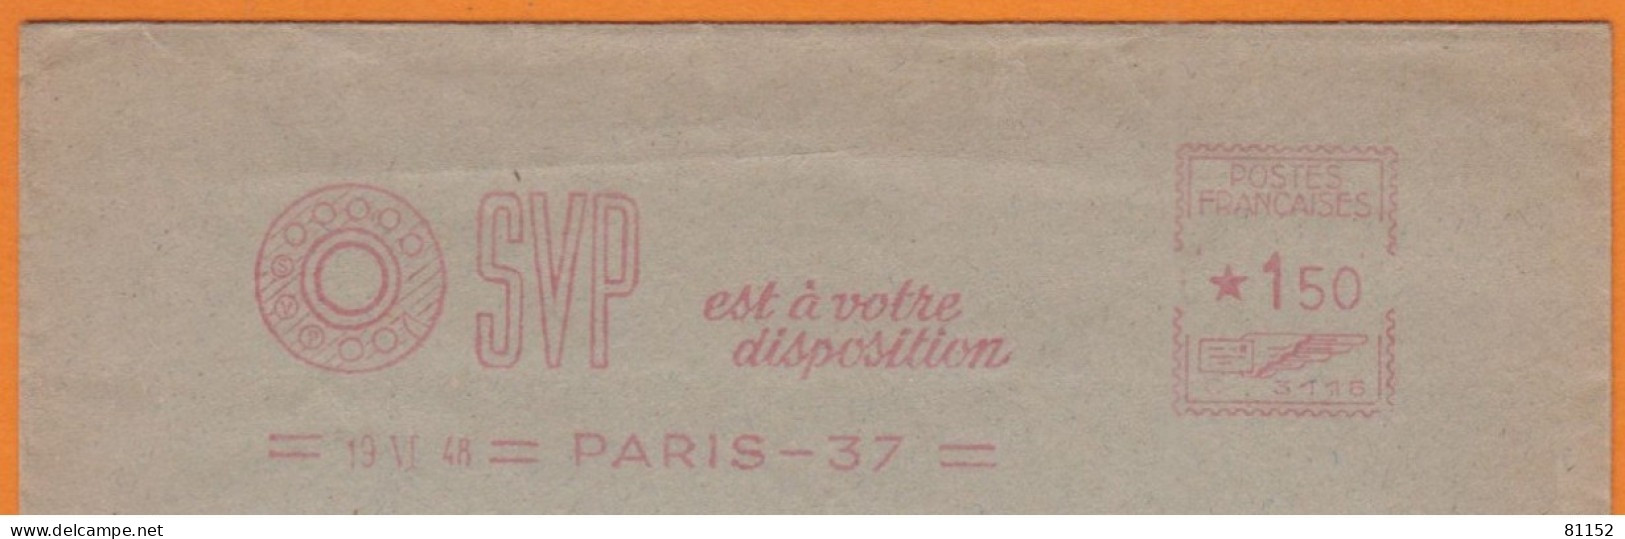 EMA  Sur Lettre De PARIS 37   Année 1948 " SVP Est à Votre Disposition " - EMA (Printer Machine)